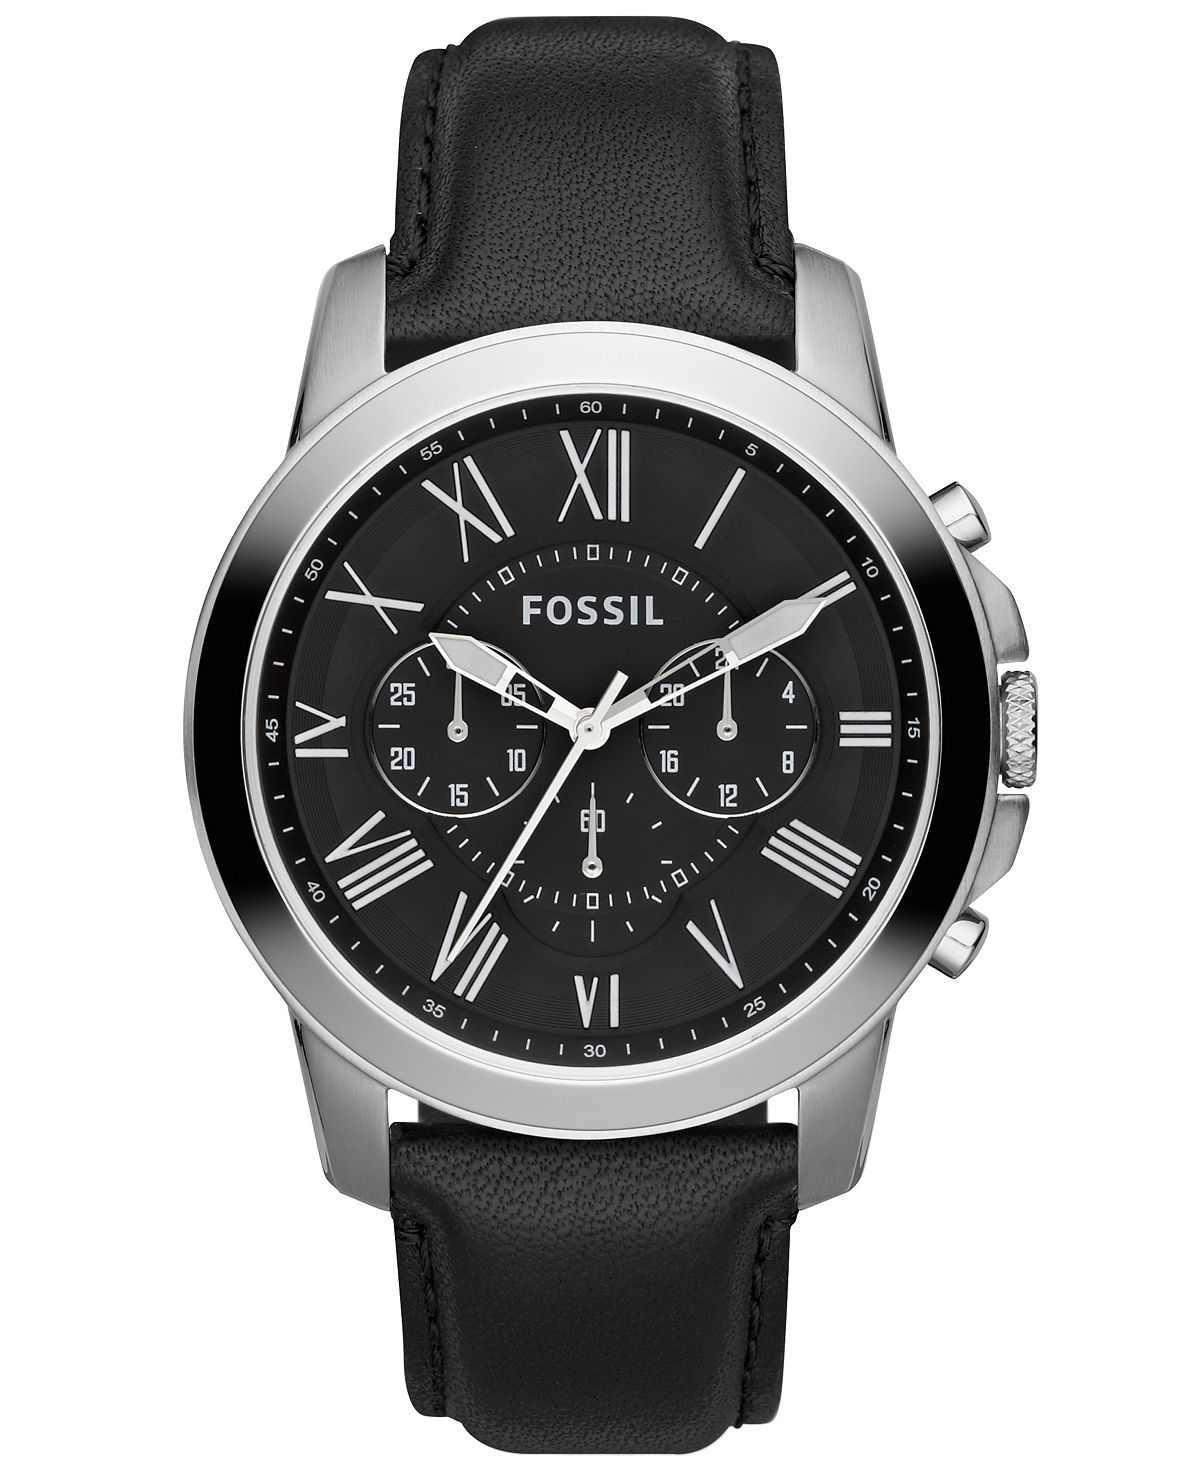 Мужские часы с хронографом Grant с черным кожаным ремешком 44 мм FS4812 Fossil fossil grant fs4736